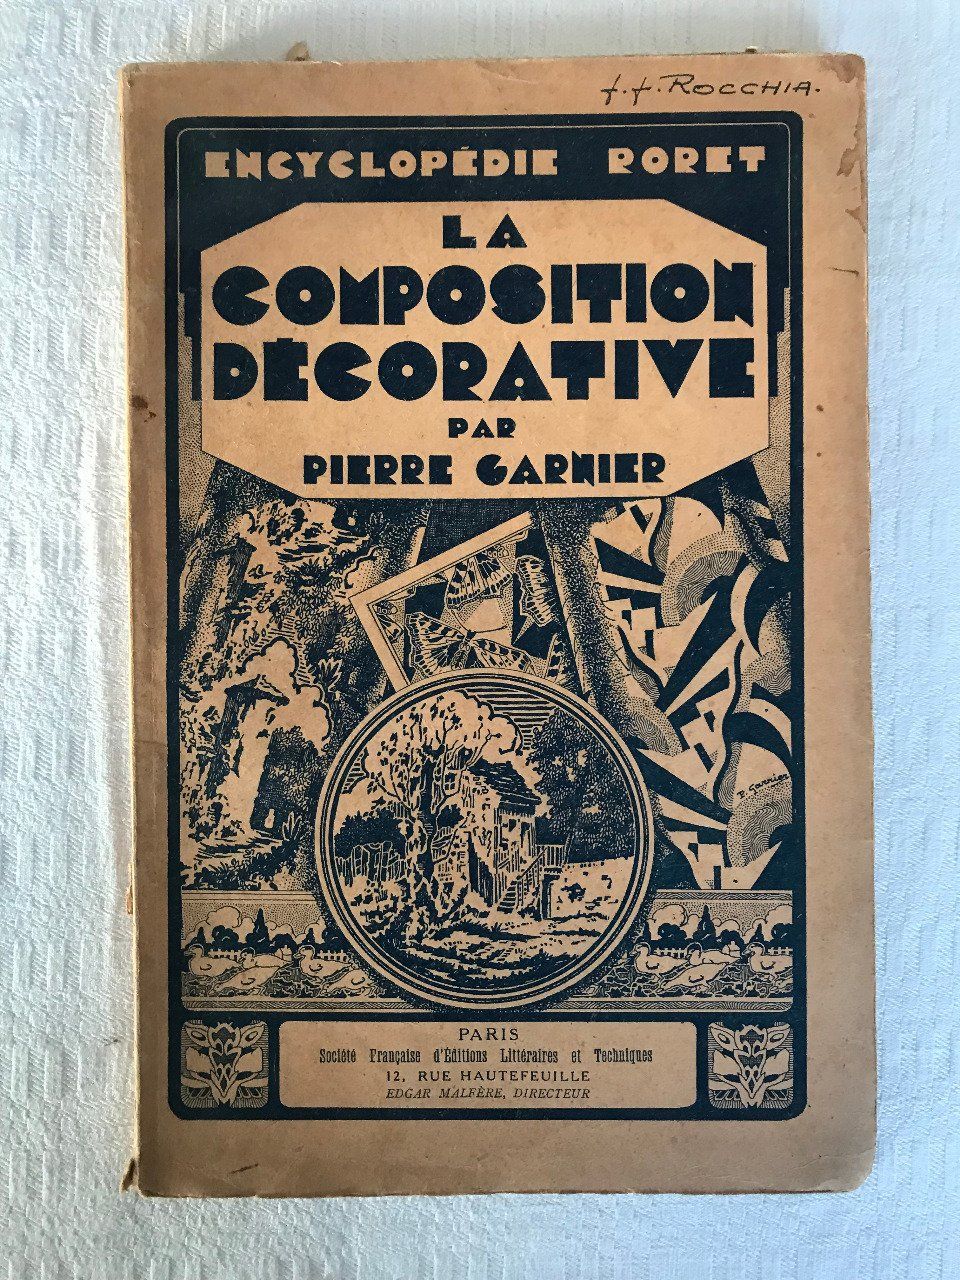 Livre, La composition décorative par Pierre Garnier, encyclopédie Roret, 1935